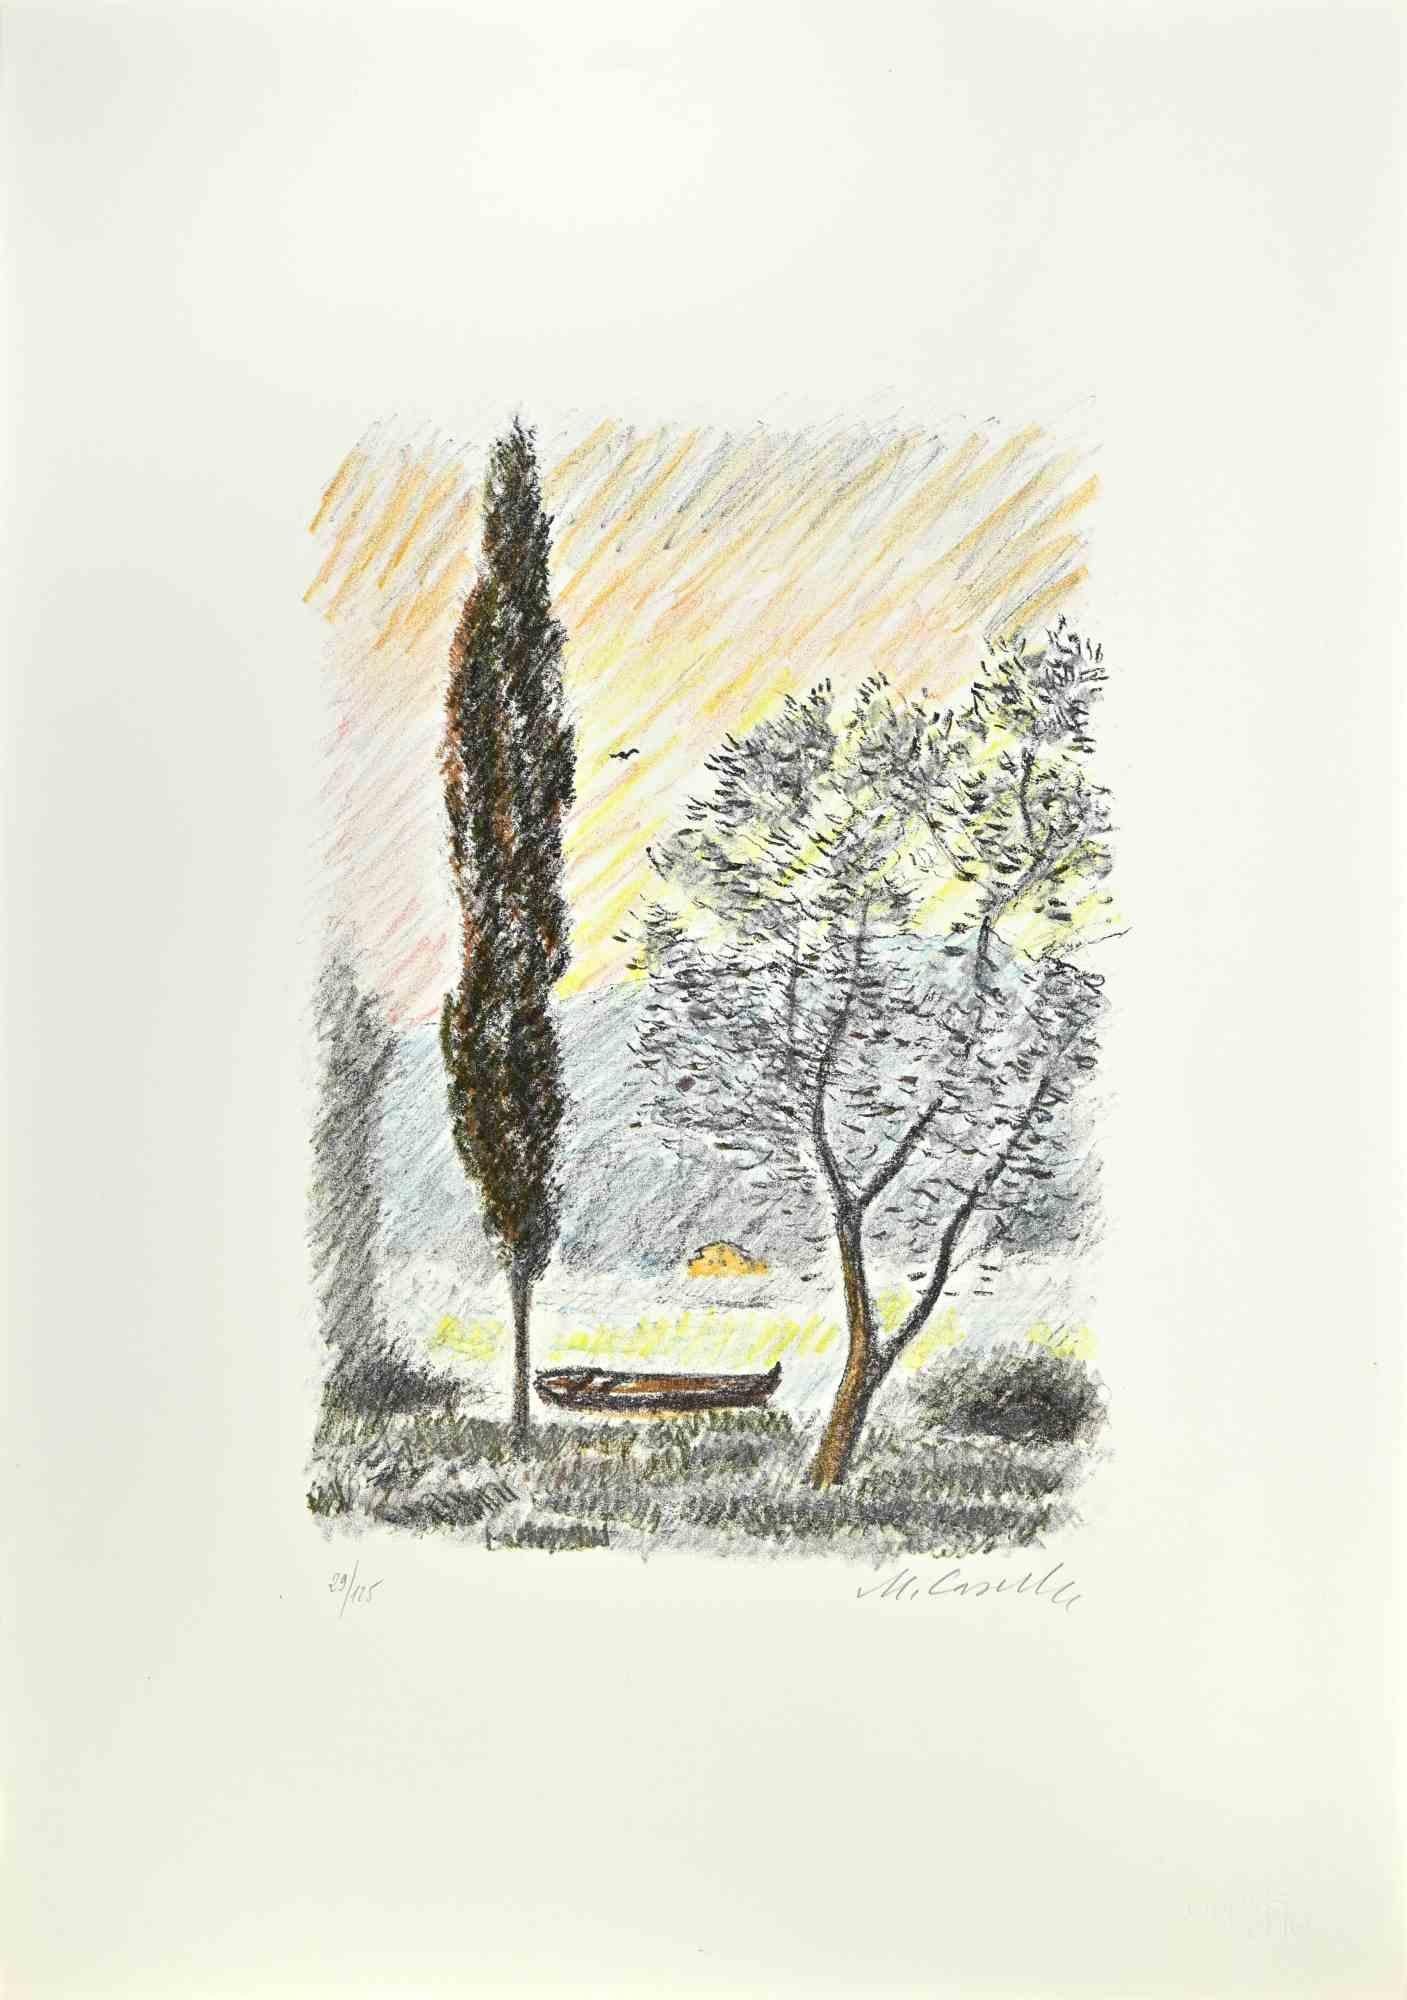 Der Pinienwald von Pescara ist ein Kunstwerk des italienischen Künstlers Michele Cascella aus dem Jahr 1979.

Kolorierte Lithographie auf Papier des Portfolios "Landschaft", 1979, mit sechs Originallithographien und den Gedichten von Franco